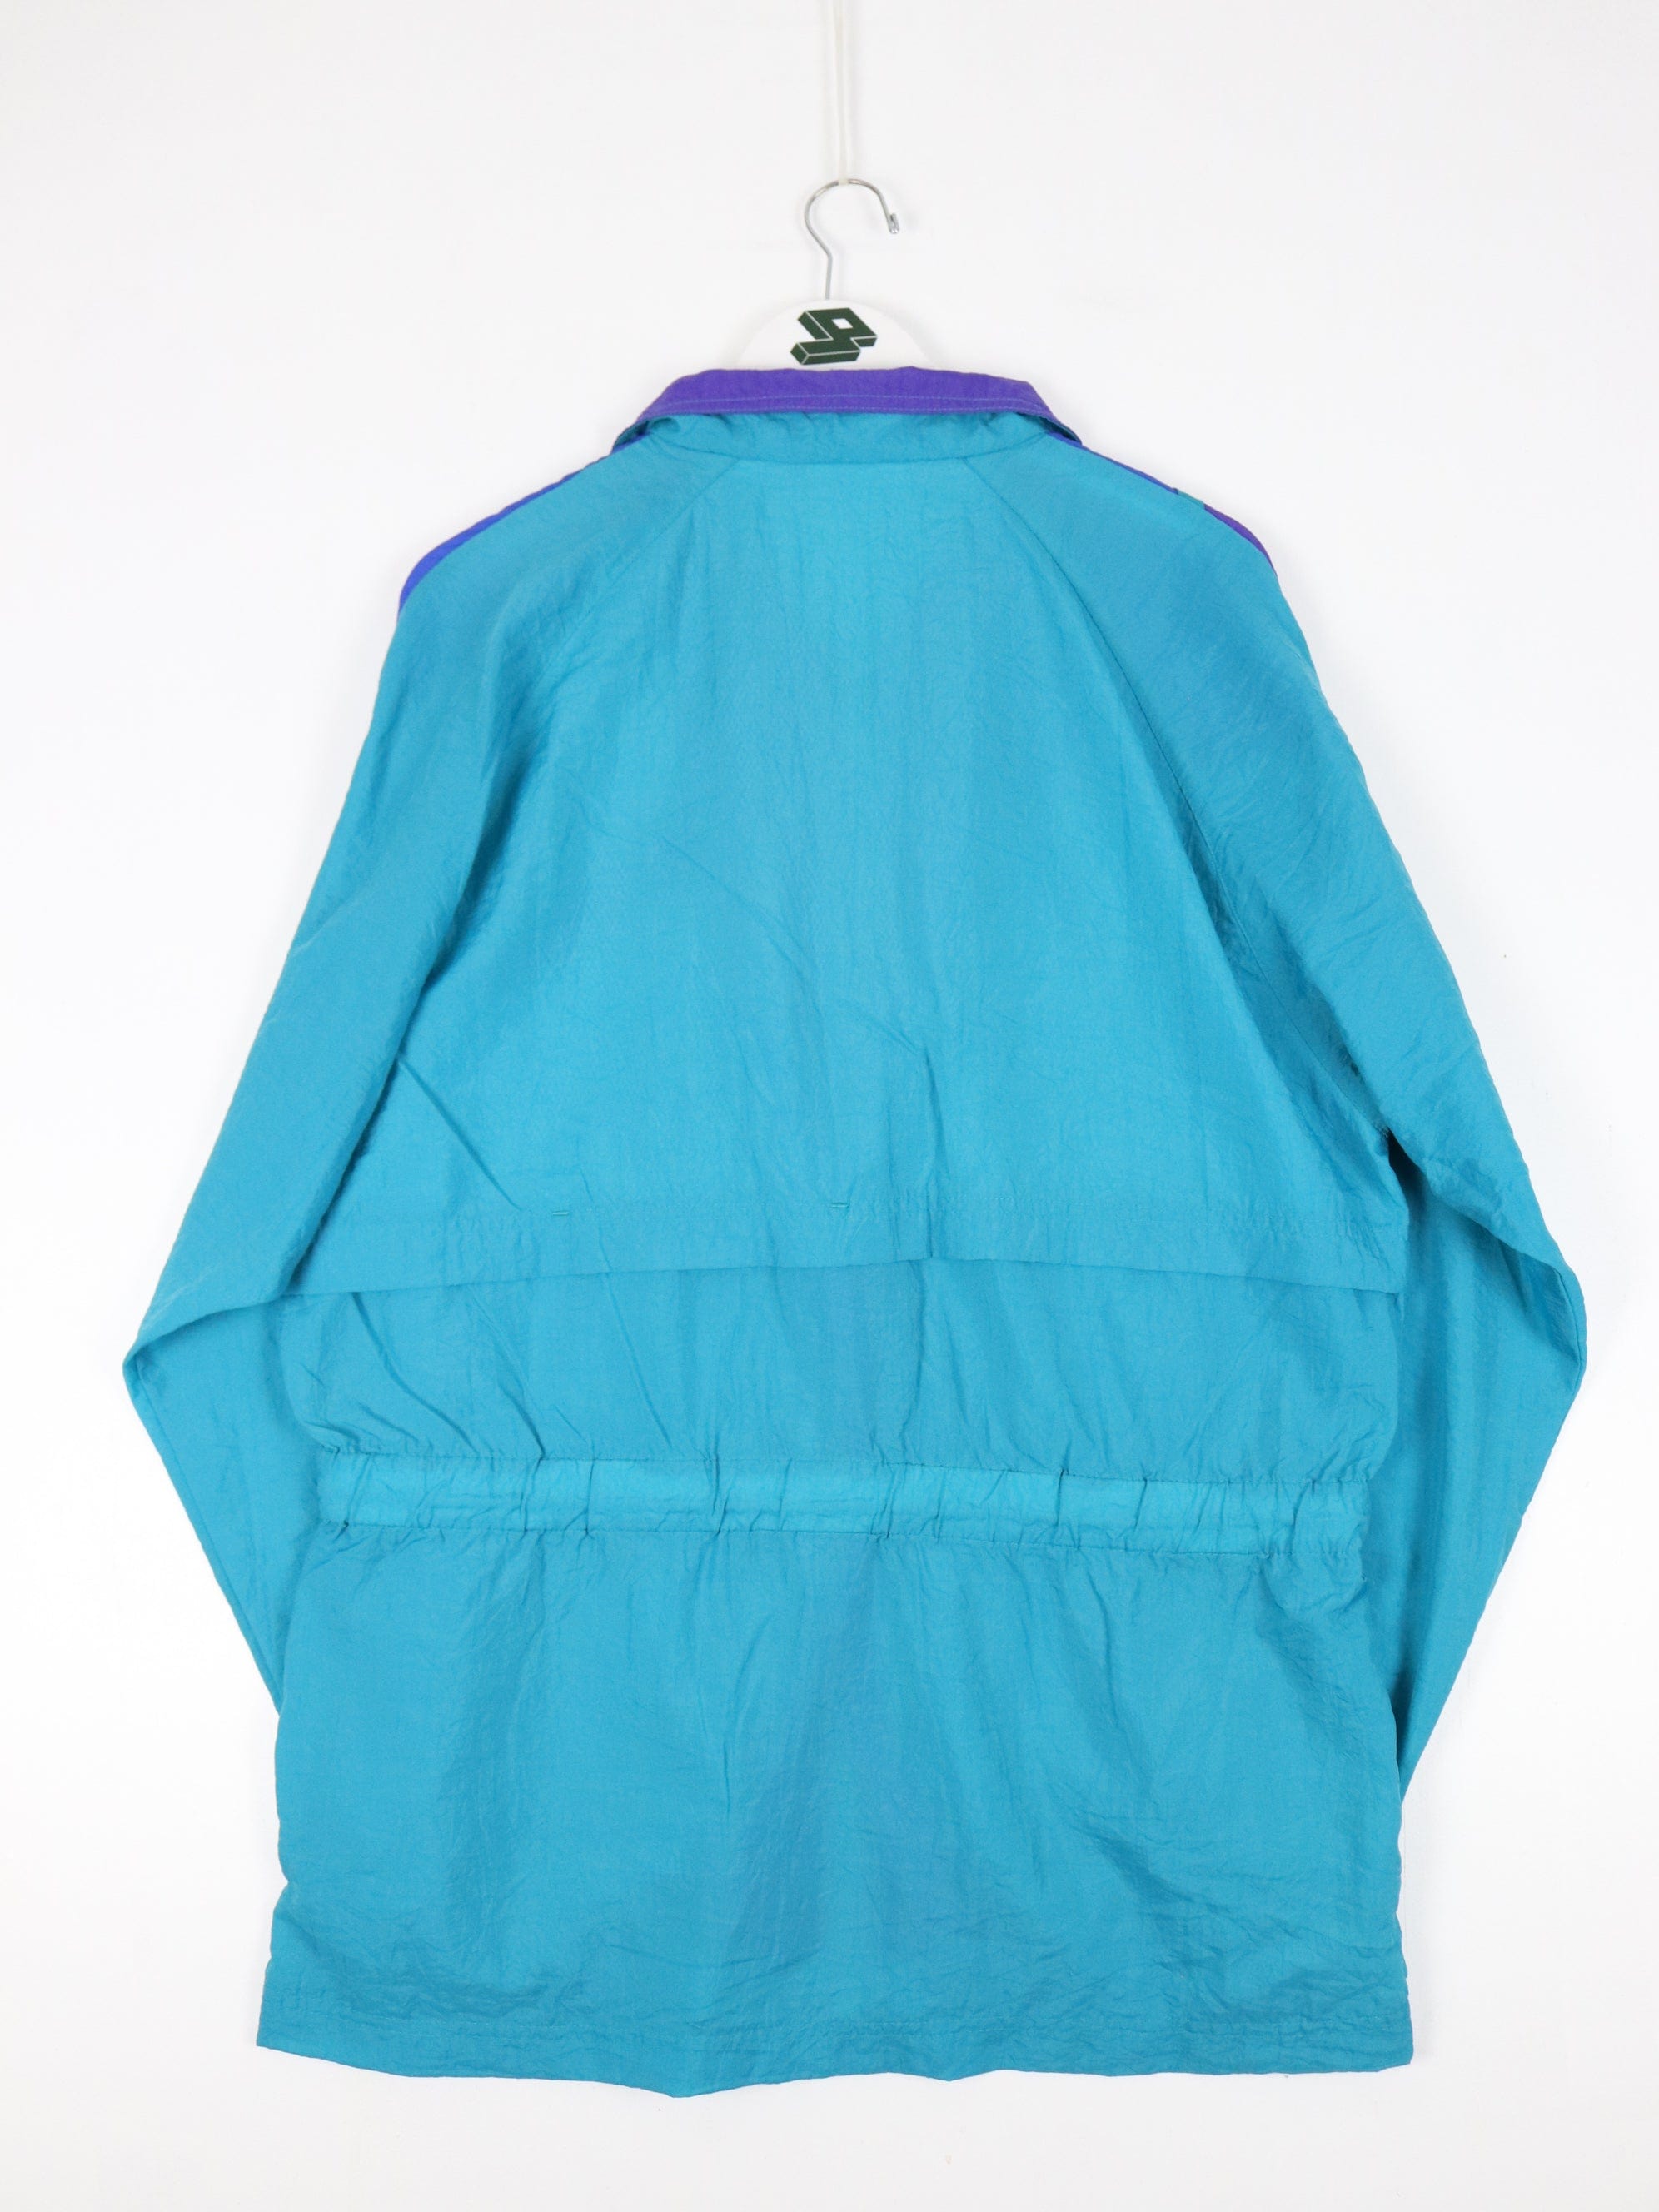 Vintage Reebok Windbreaker Womens Large Purple Jacket Y2K – Proper Vintage